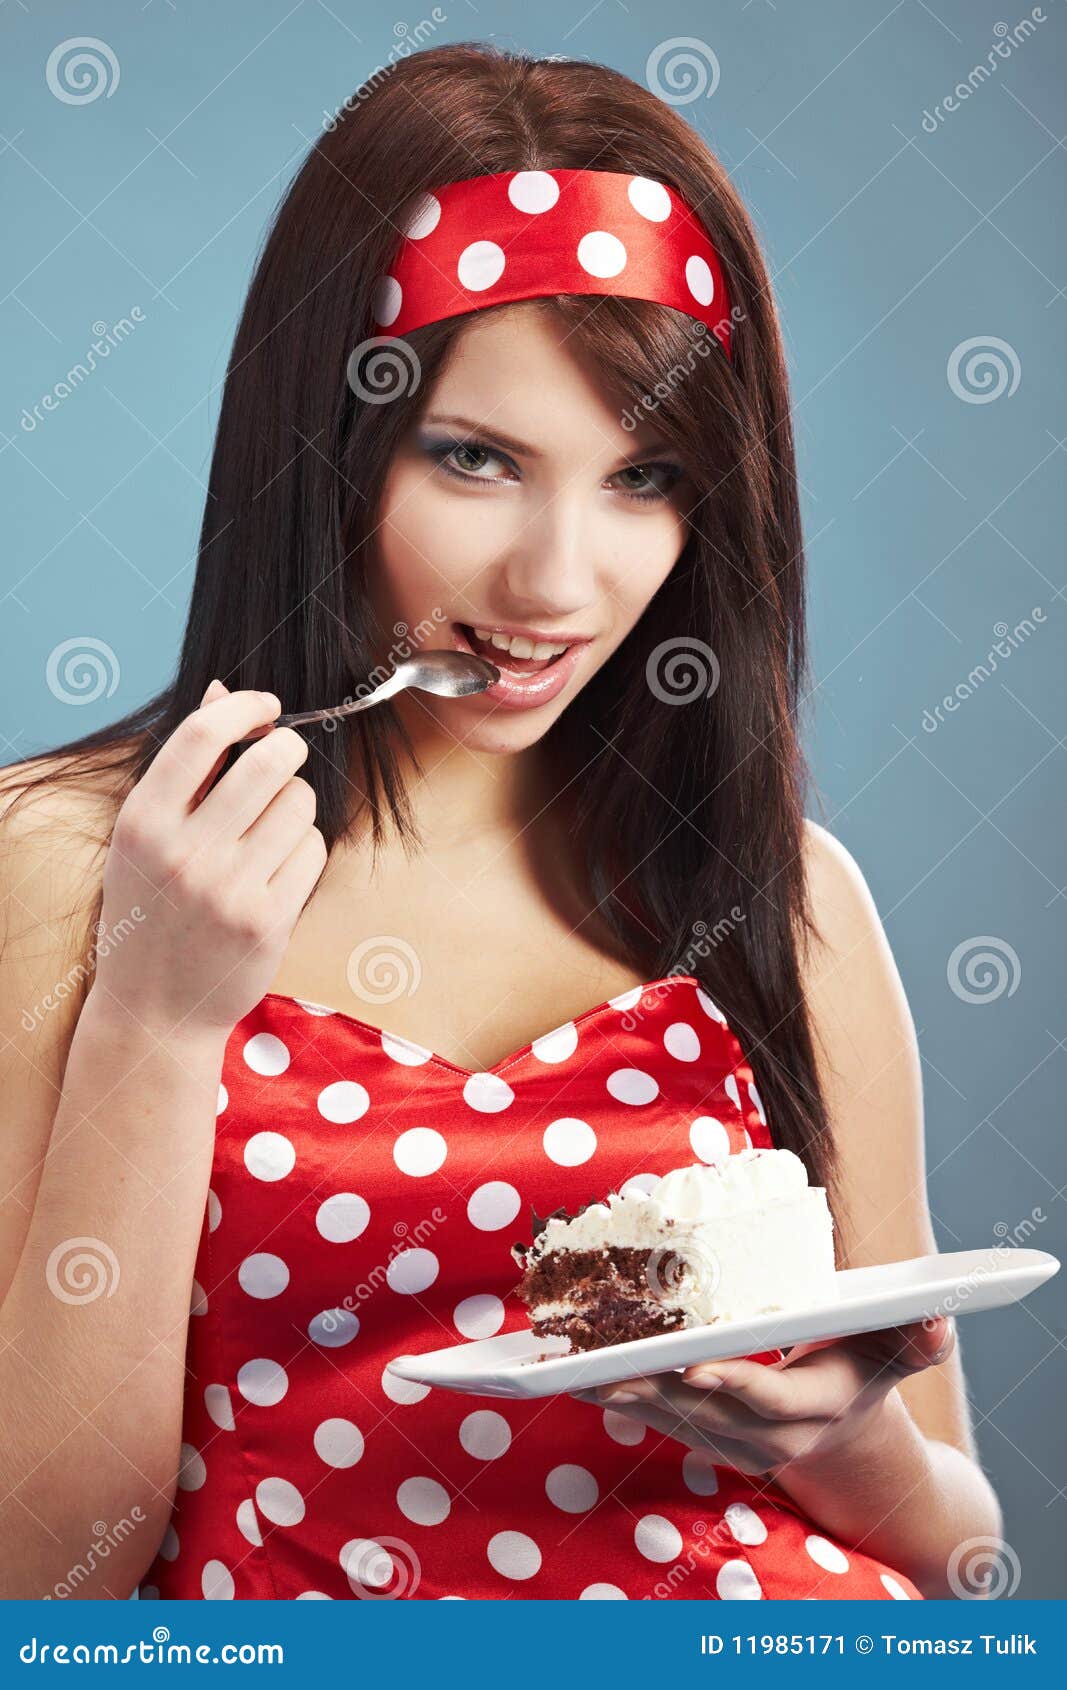 Девушка лицом в торт штырь. Торт для девушки. Девушка с пирожным. Женщина и сладкое. Девушка со сладостями.